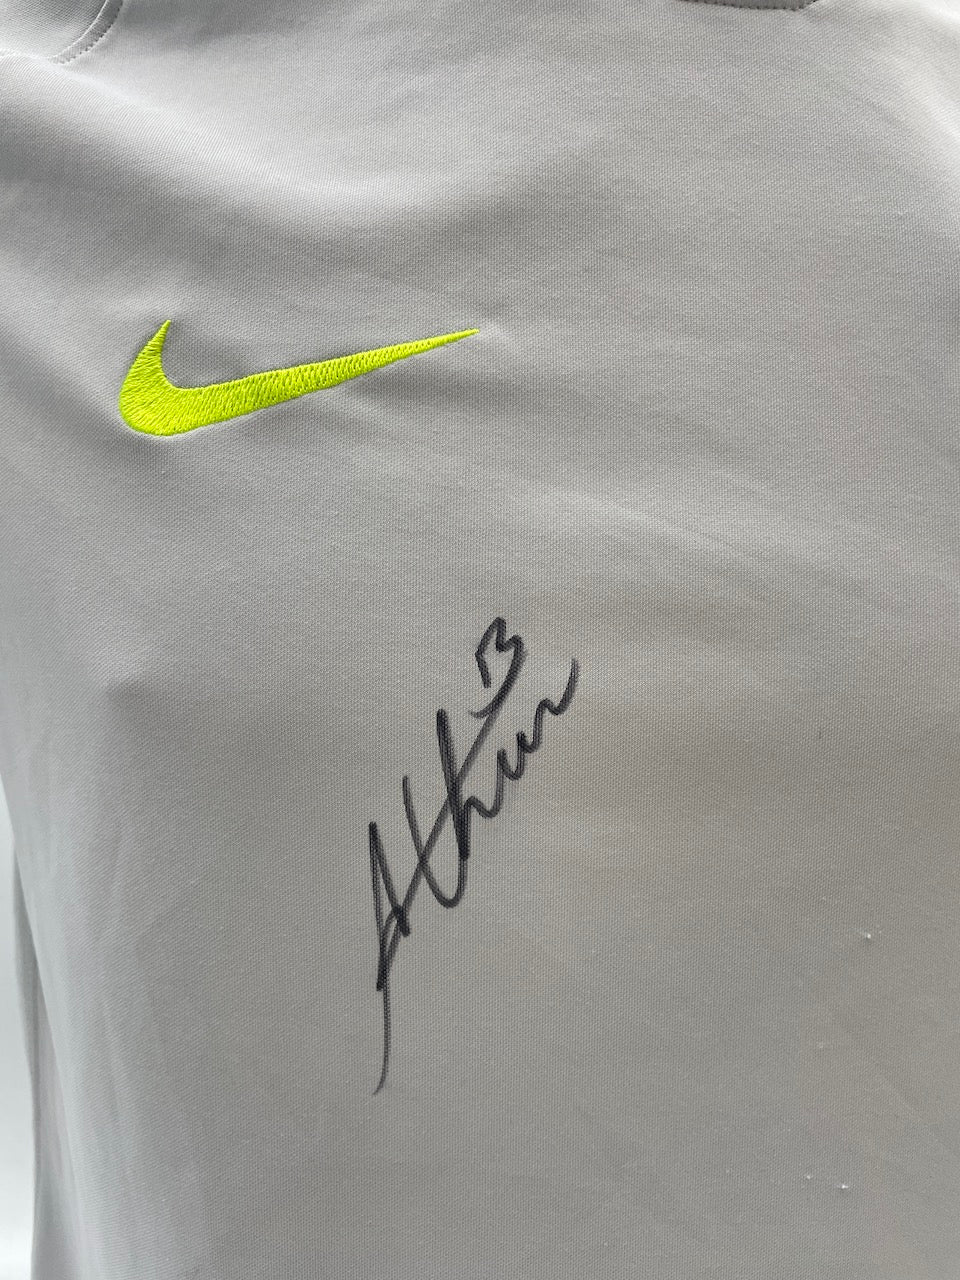 Brasilien Shirt Arthur signiert Neu Unterschrift Autogramm COA handsigned M